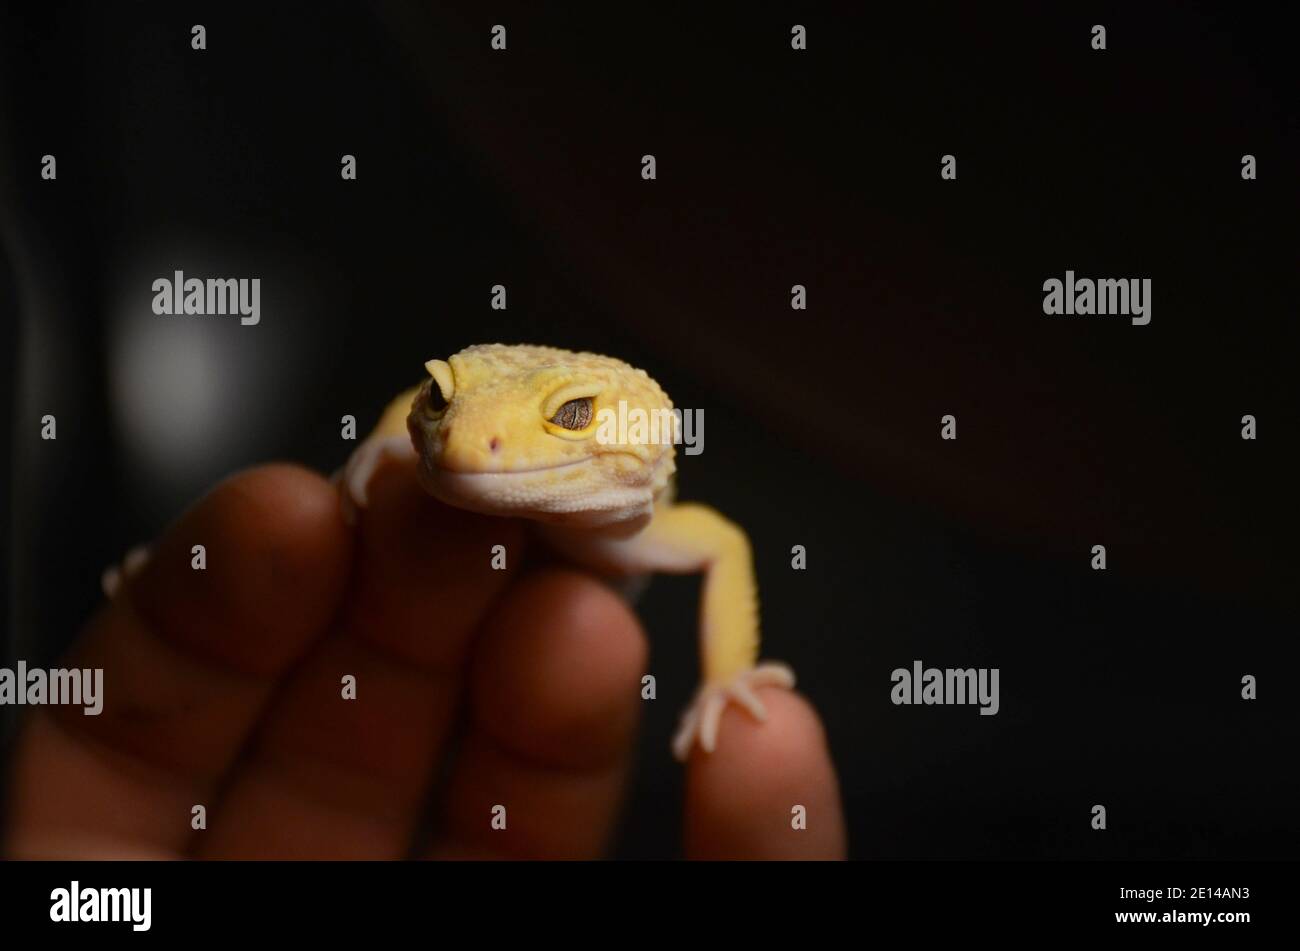 reptiles Stock Photo